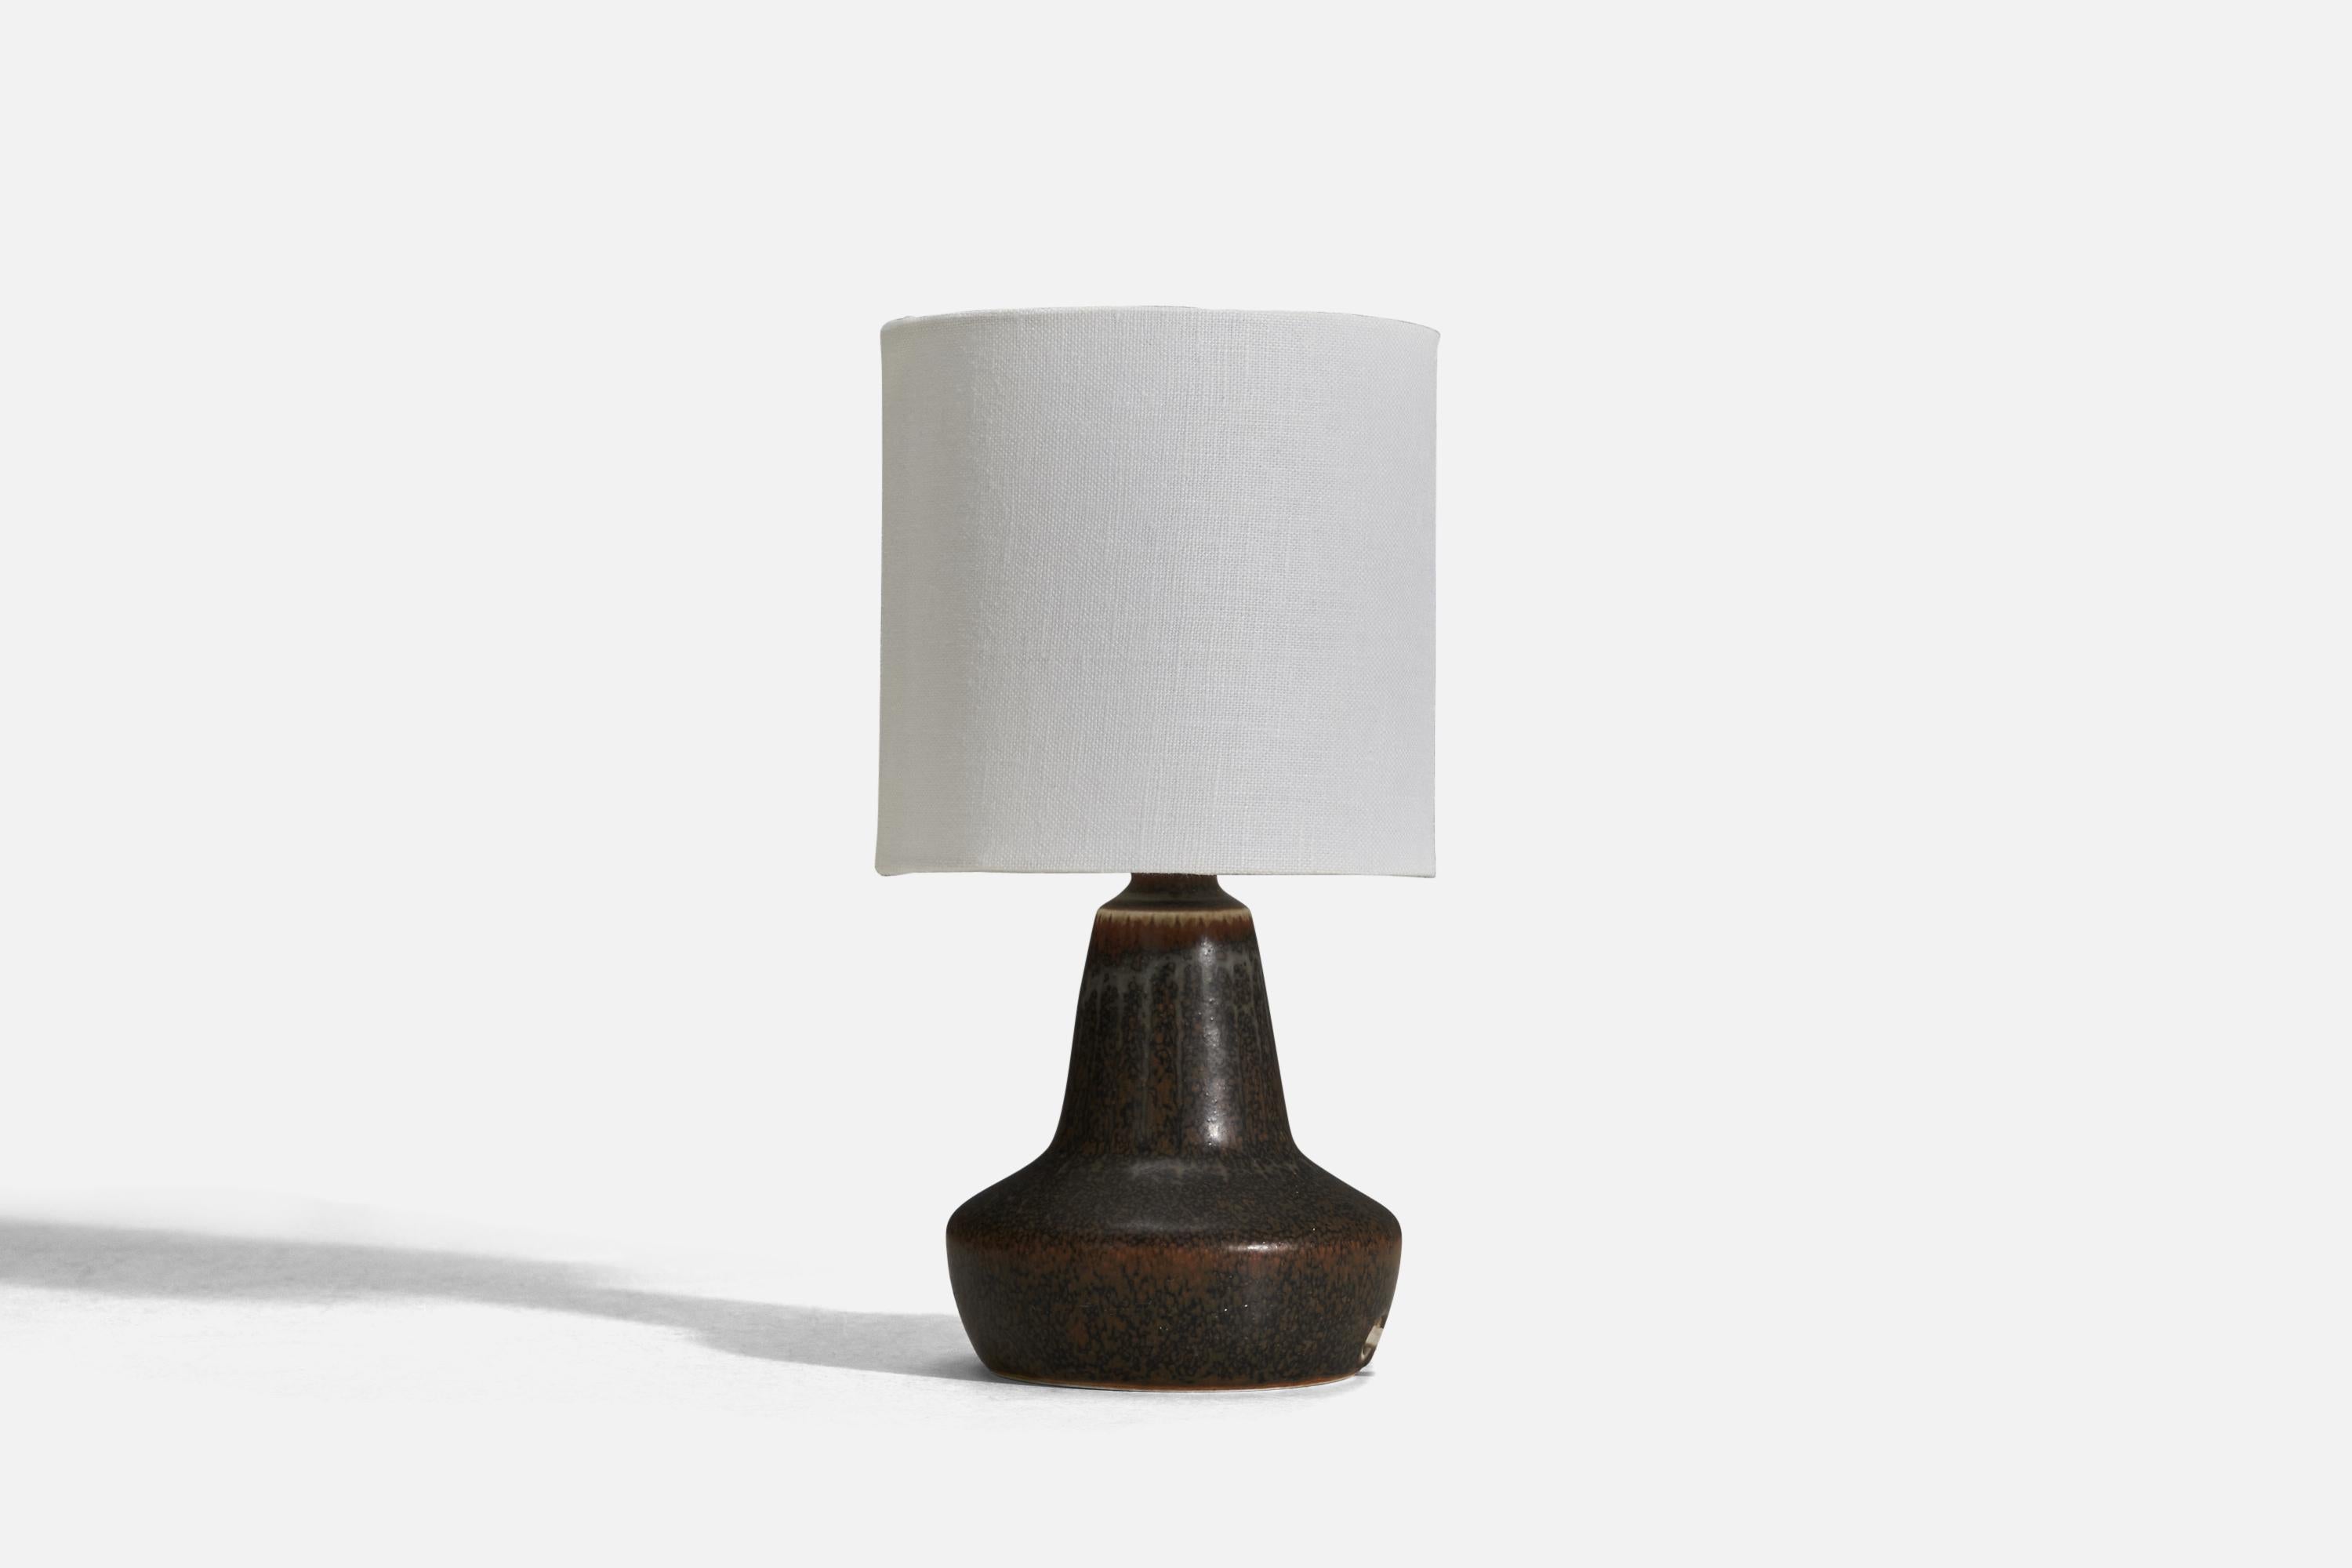 Paire de lampes de table en grès émaillé brun, conçues par Gunnar Nylund et produites par Rörstrand, Suède, années 1950.

Vendu sans abat-jour
Dimensions de la lampe (pouces) : 6.87 x 4.18 x 4.18 (Hauteur x Largeur x Profondeur)
Dimensions de